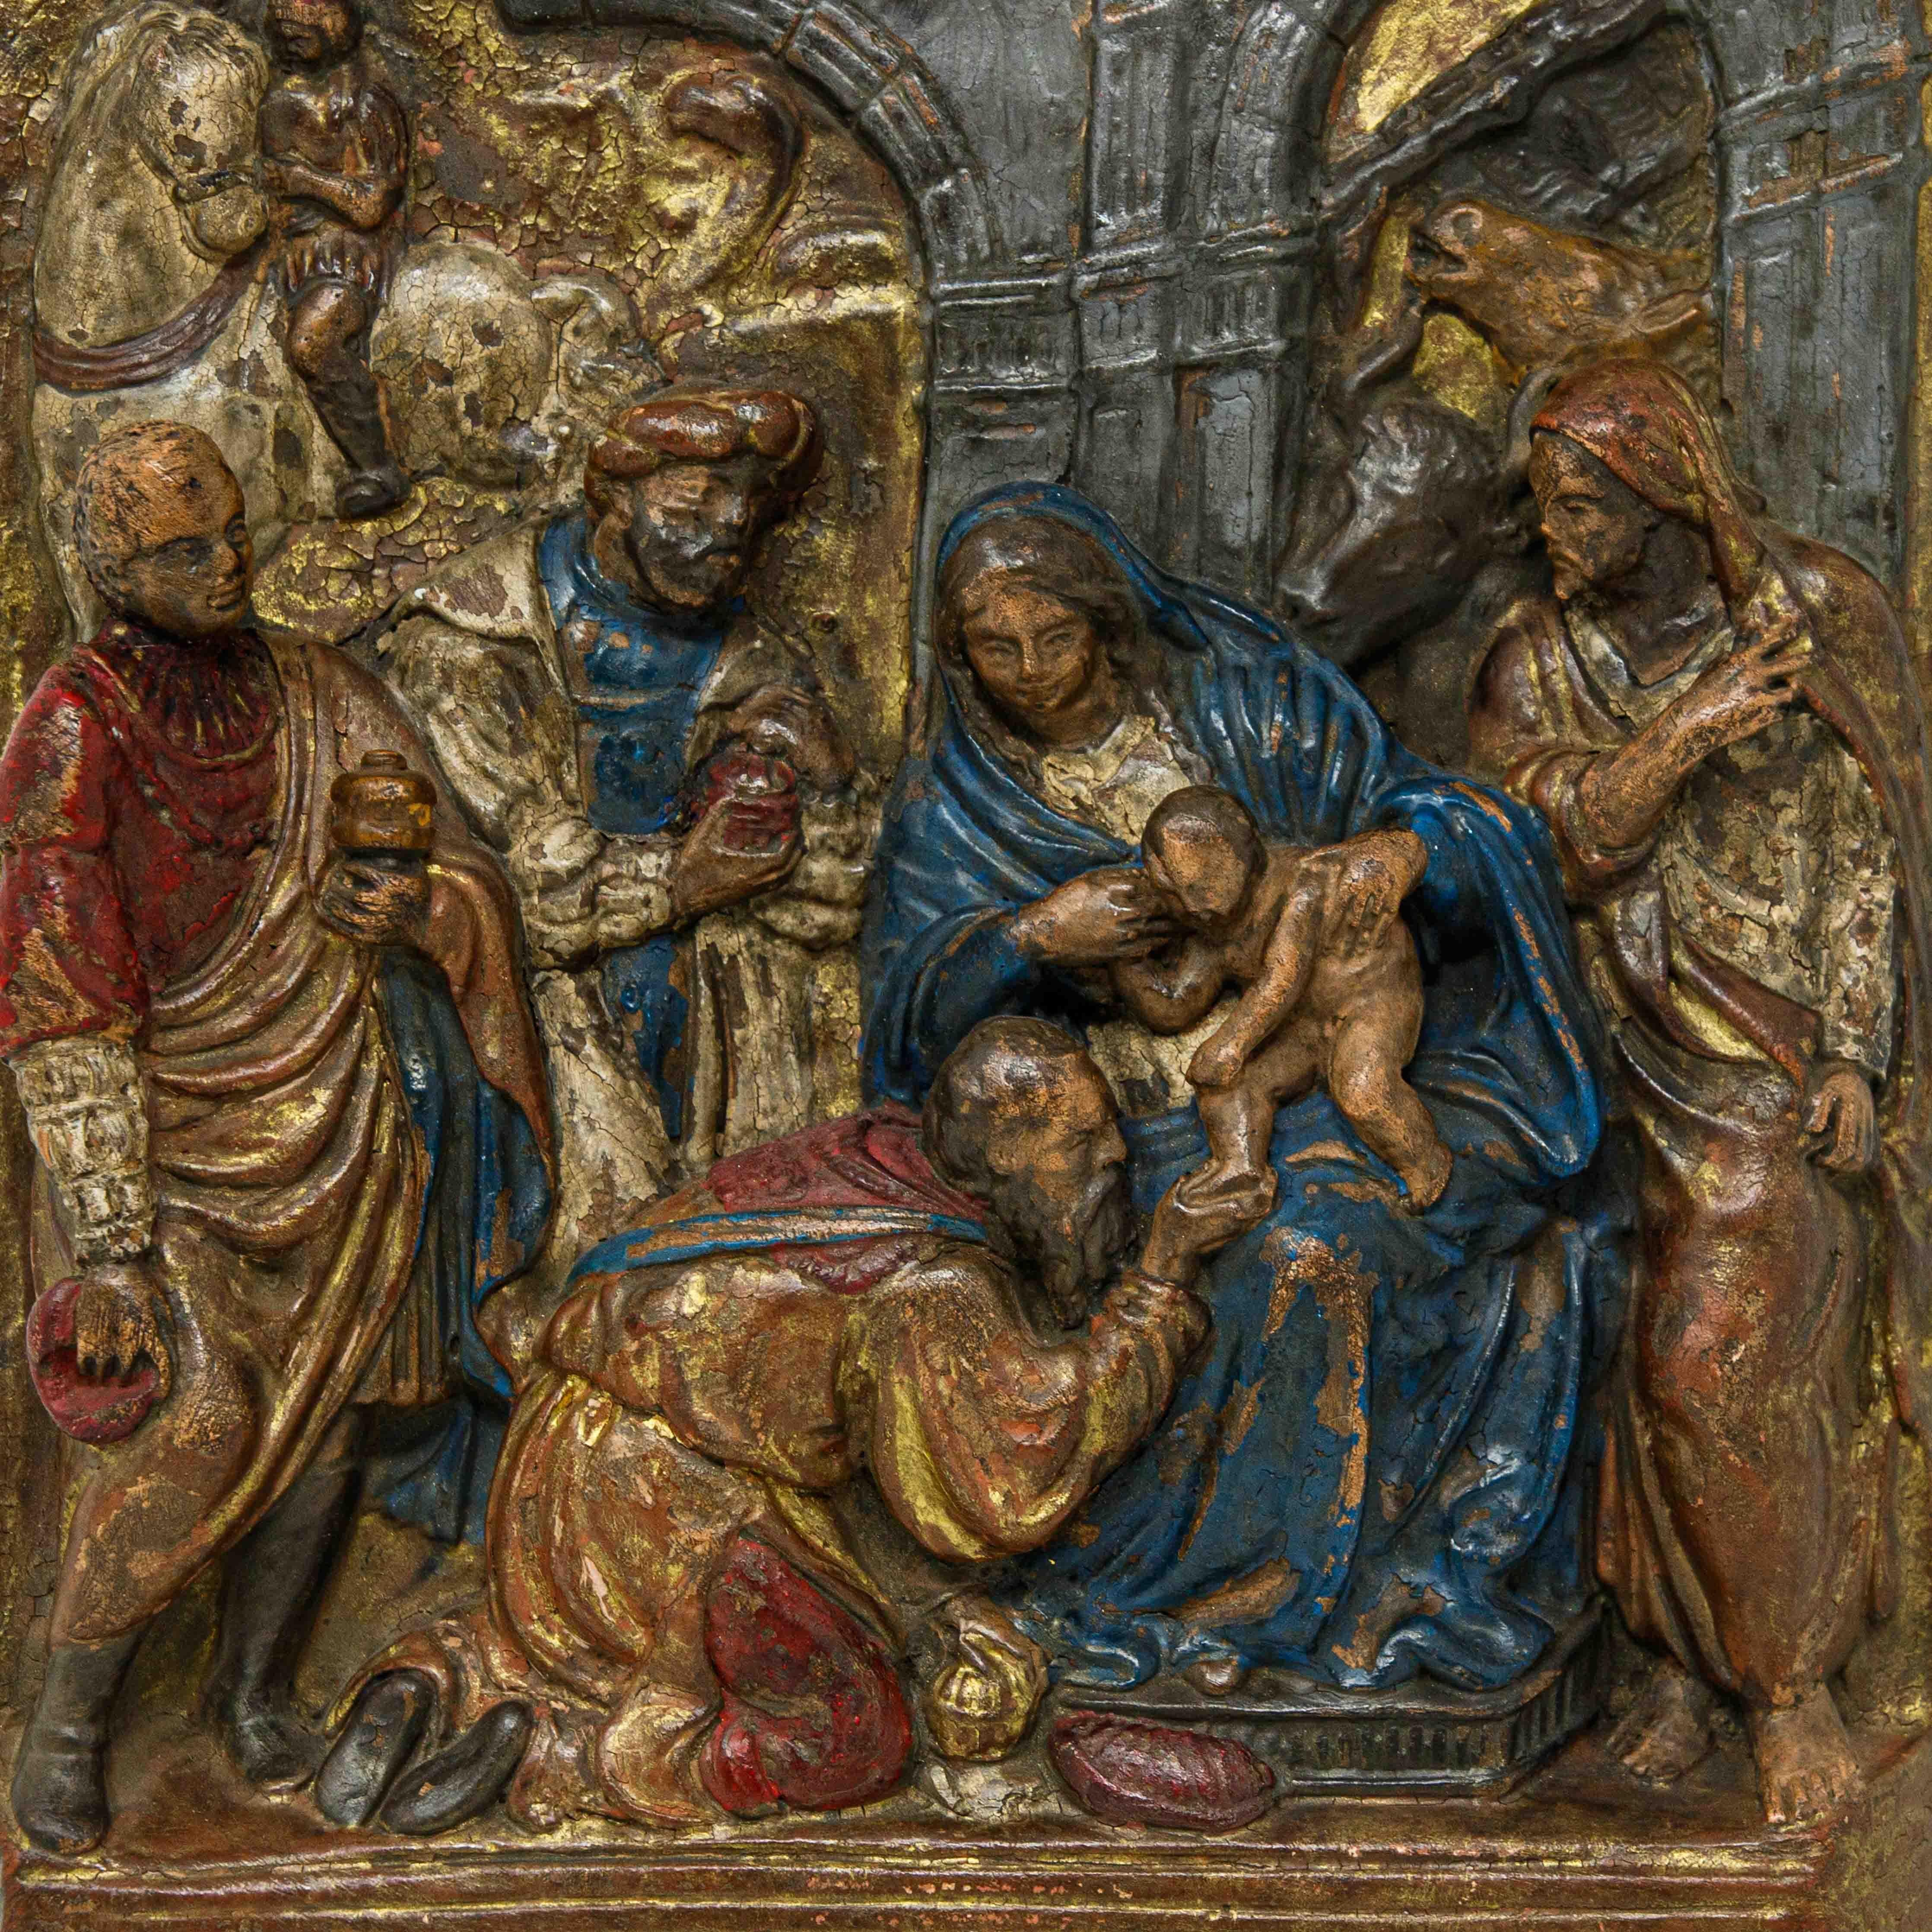 17. Jahrhundert

Anbetung der Heiligen Drei Könige

Polychrome Terrakotta, 24 x 18 cm

Dieses Relief aus Terrakotta, das seine ursprüngliche Polychromie bewahrt hat, stellt die berühmte Episode aus dem Leben Jesu aus der Anbetung der Heiligen Drei